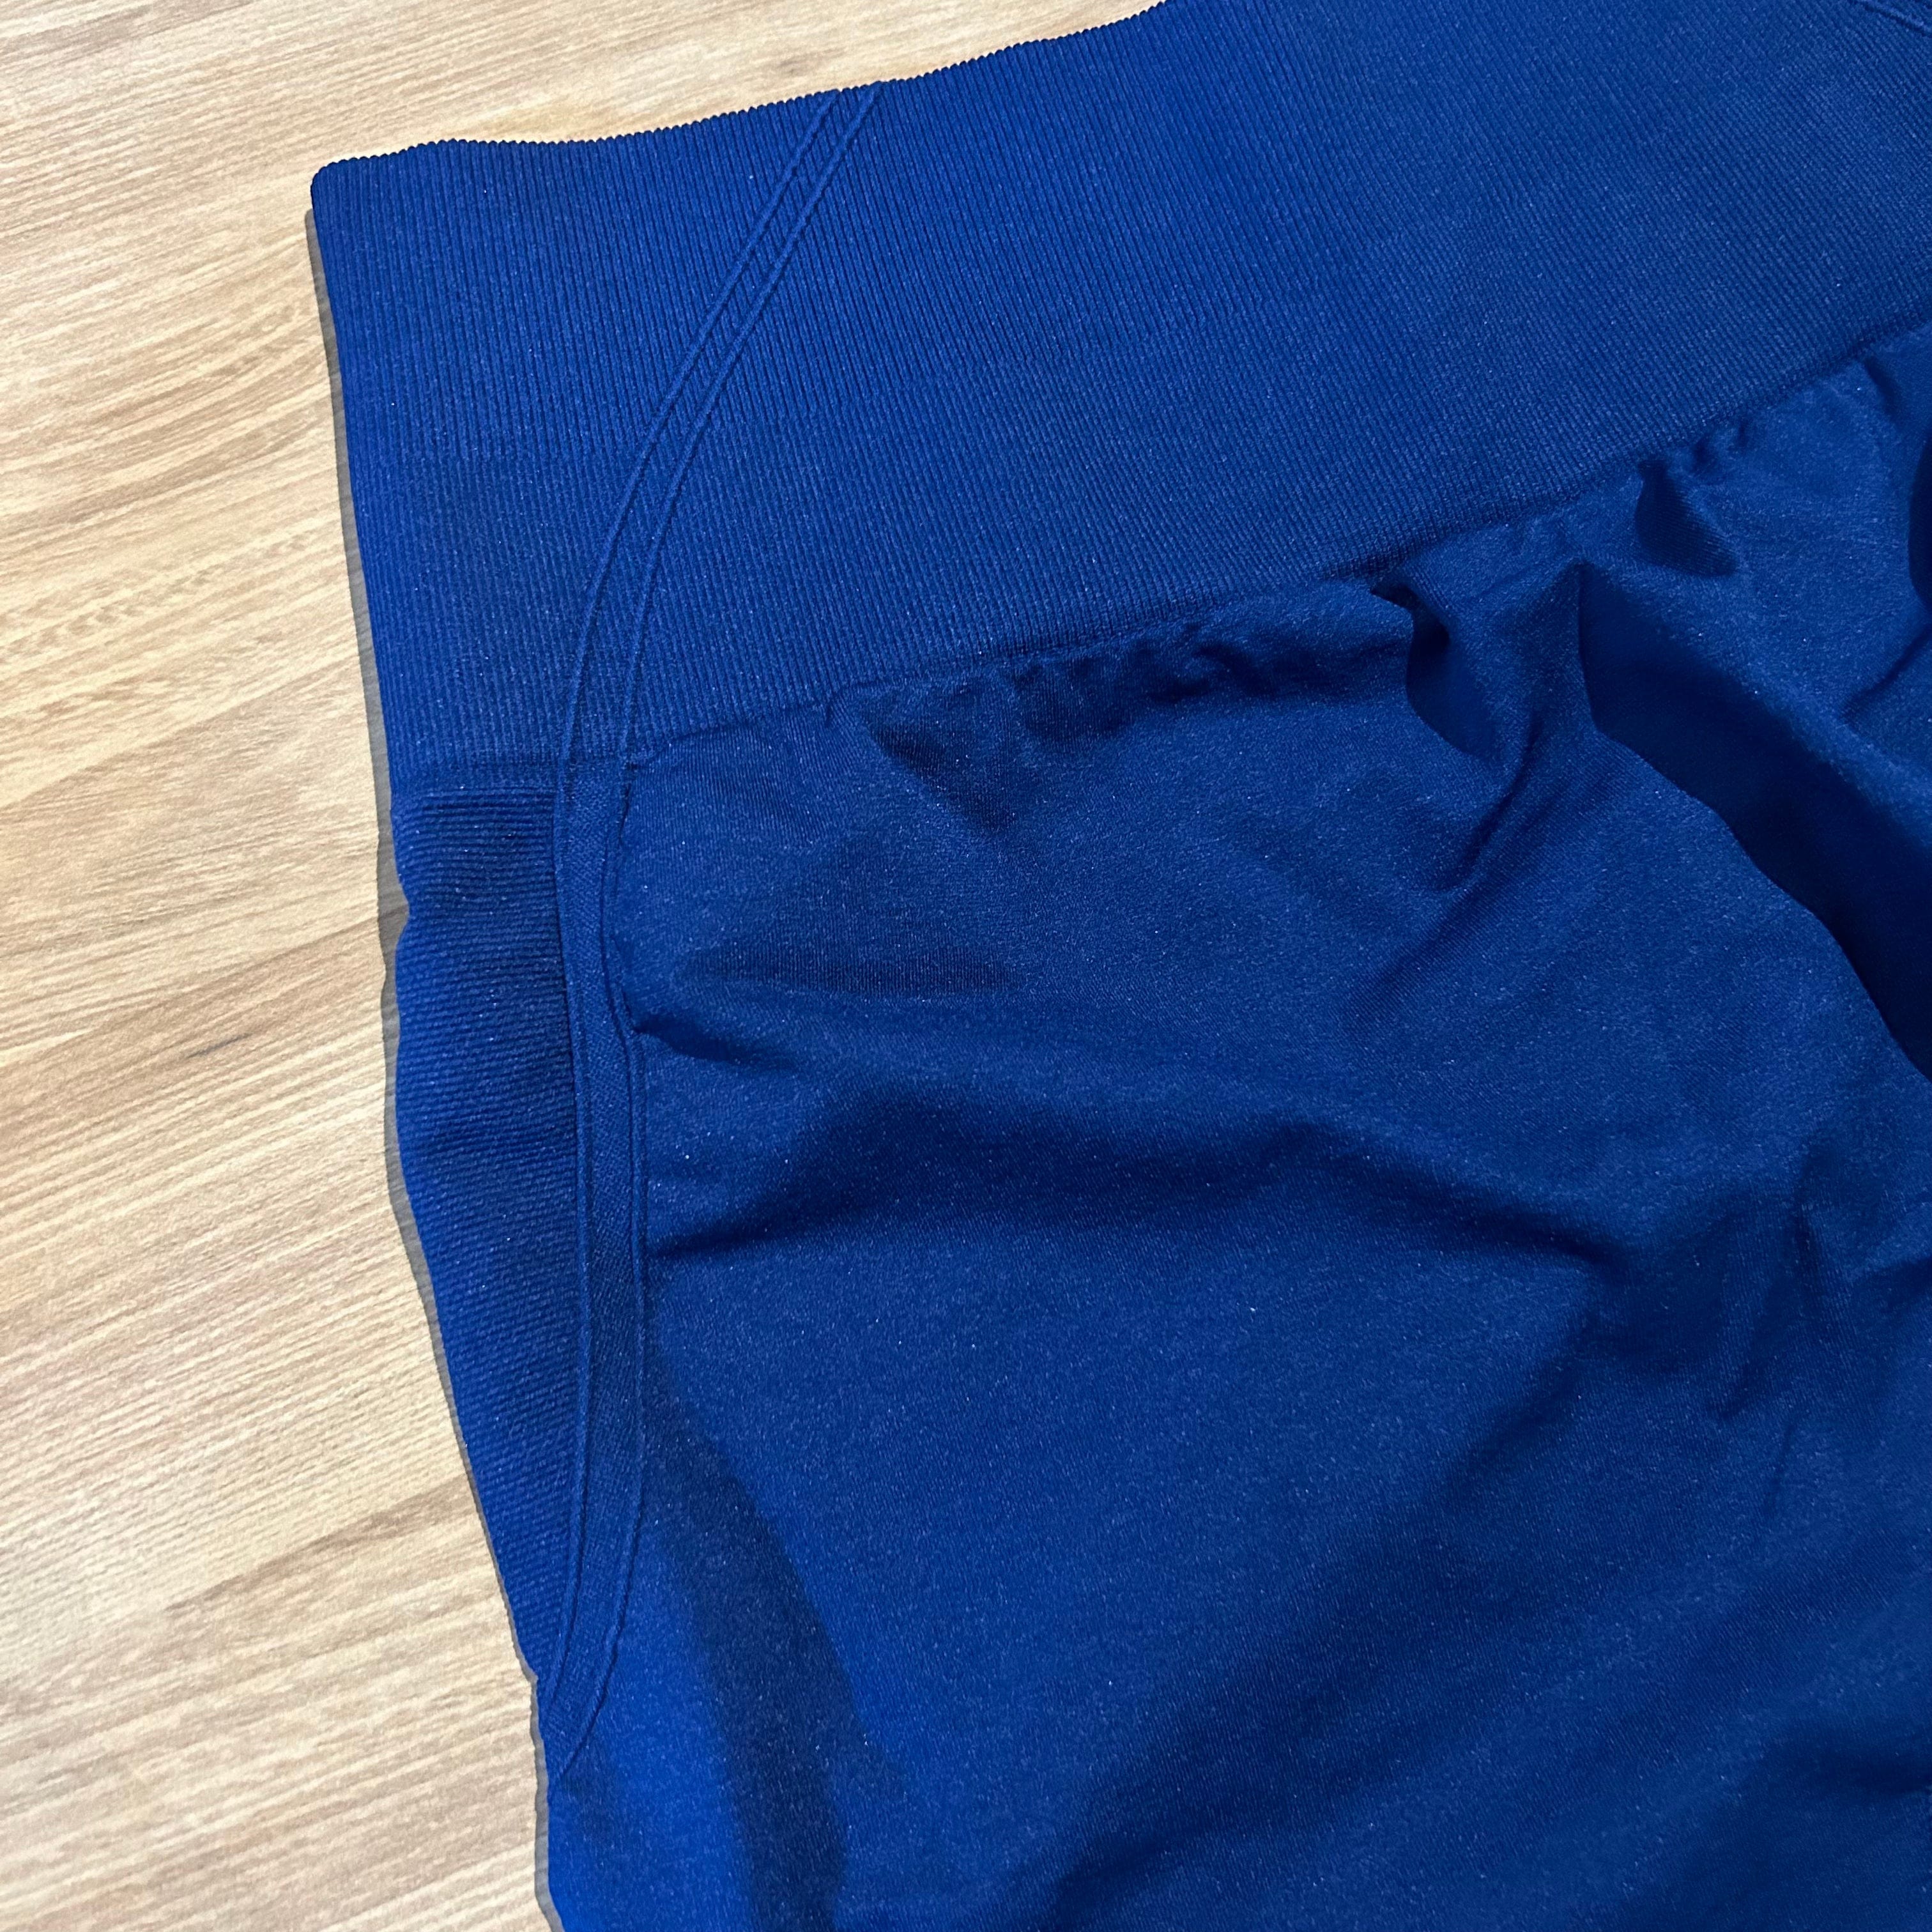 Embrace butt scrunch V4.2 shorts (5 inch inseam)